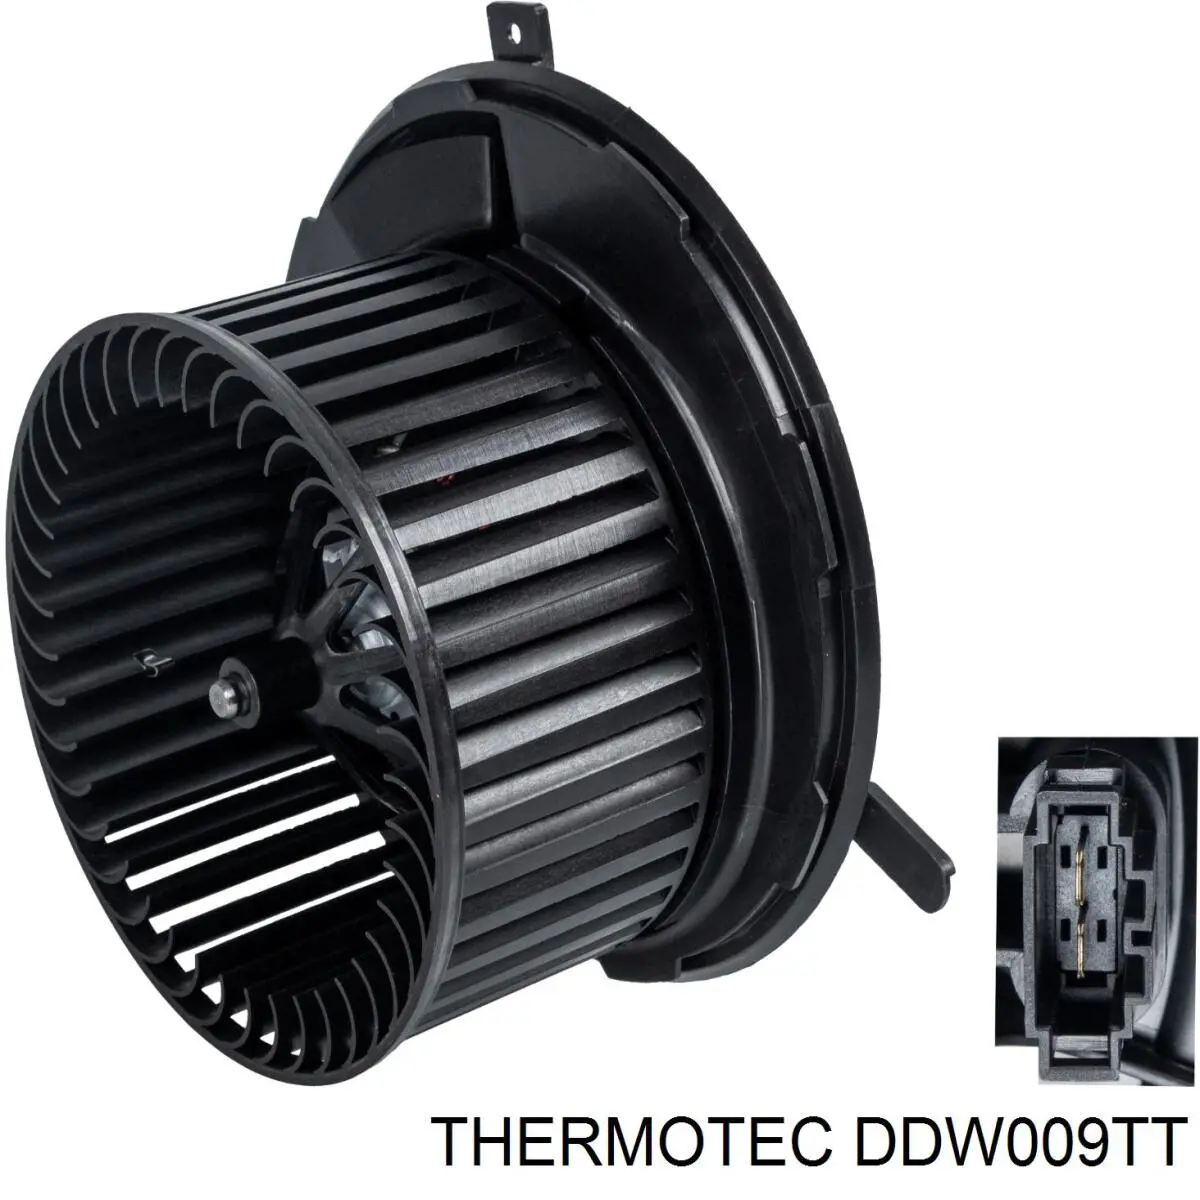 DDW009TT Thermotec motor eléctrico, ventilador habitáculo